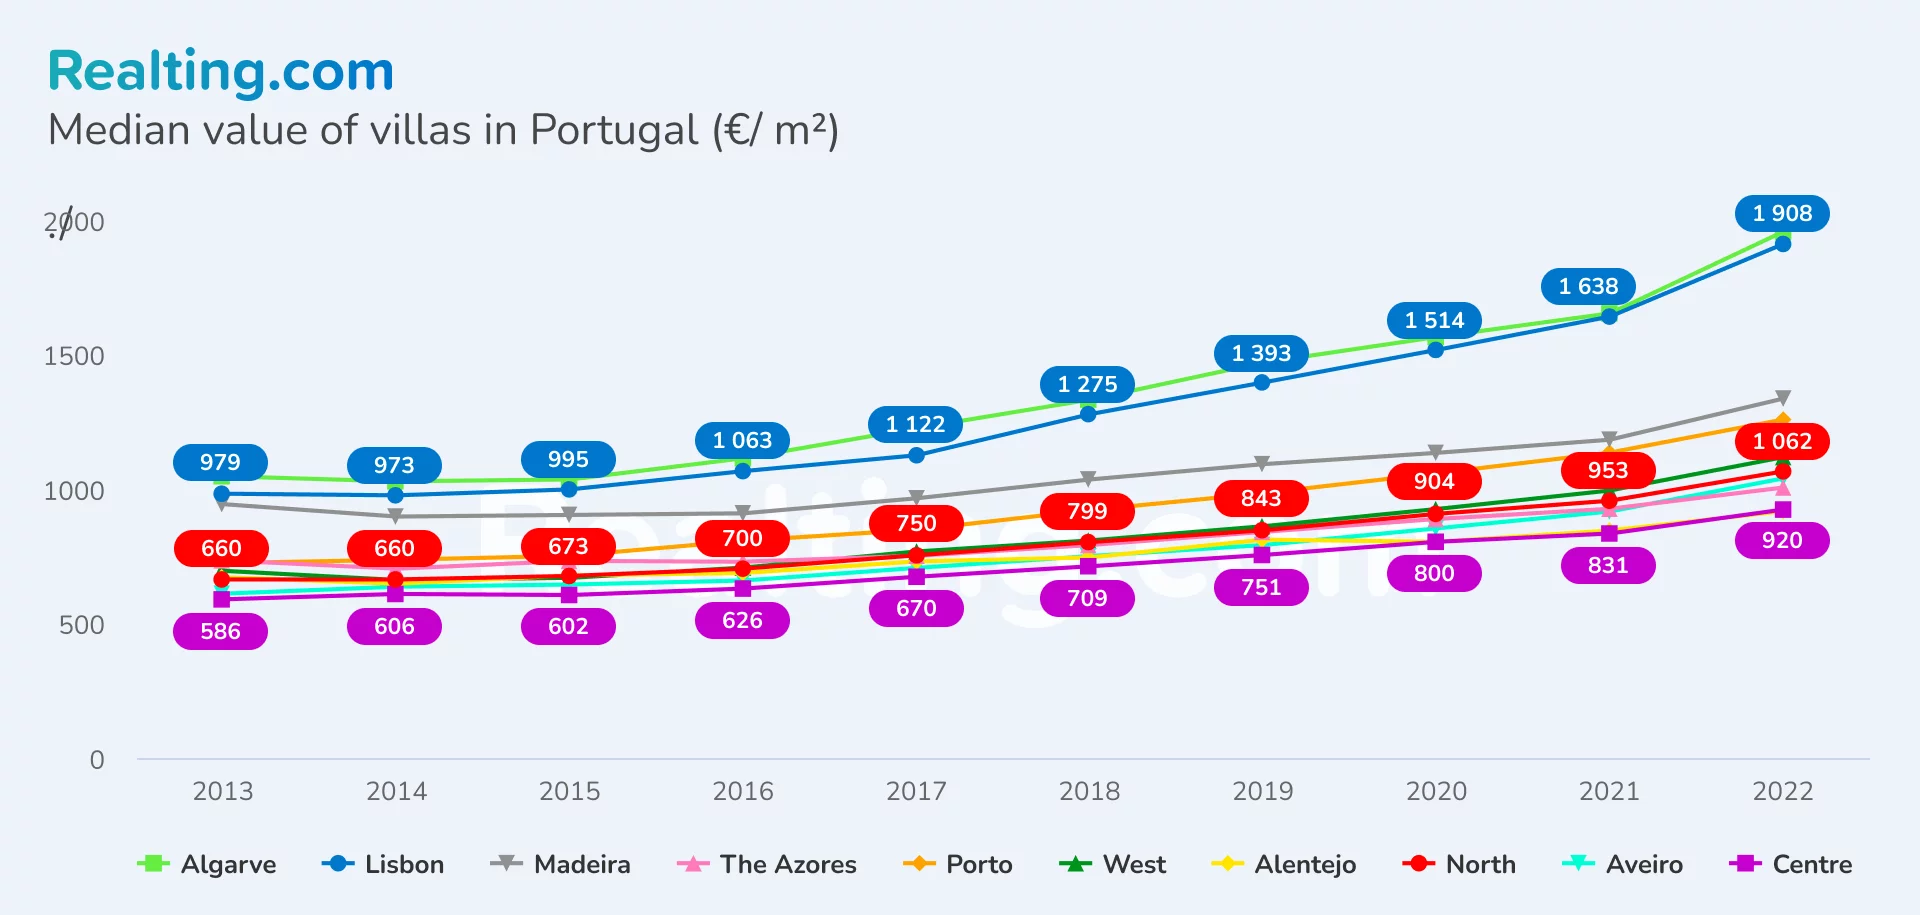 Median value of villas in Portugal